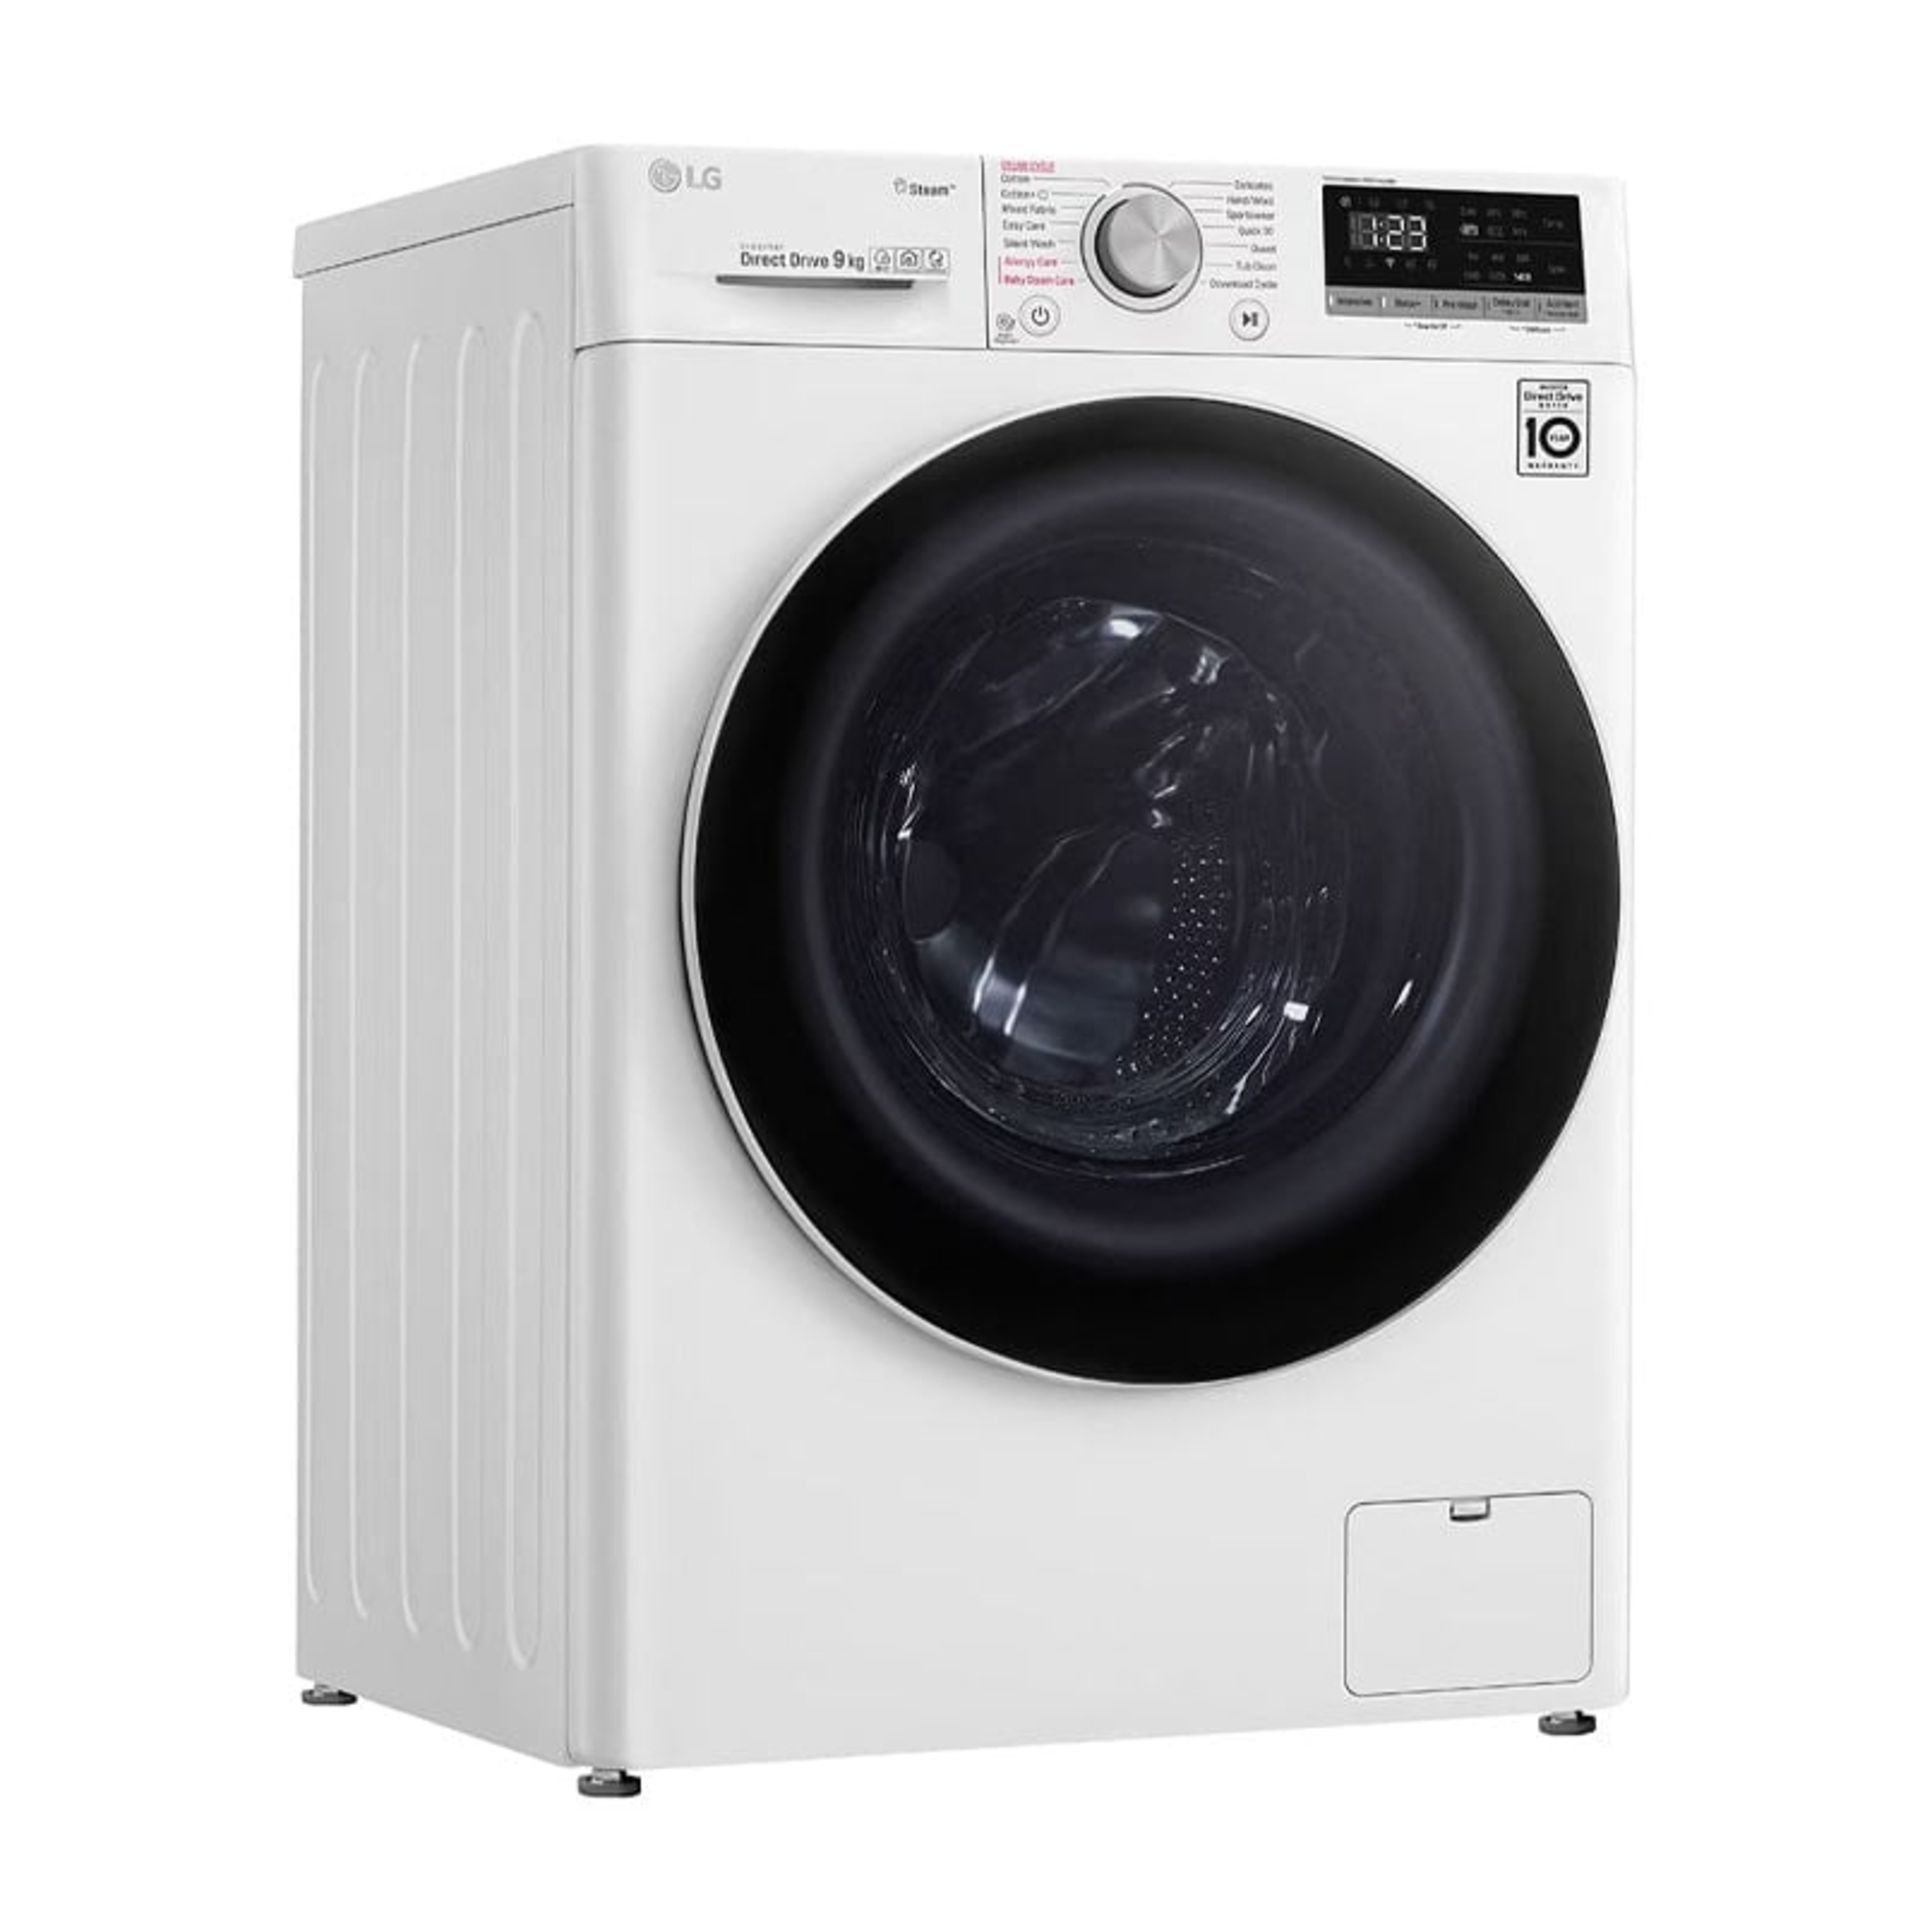  ماشین لباسشویی الجی 5 R